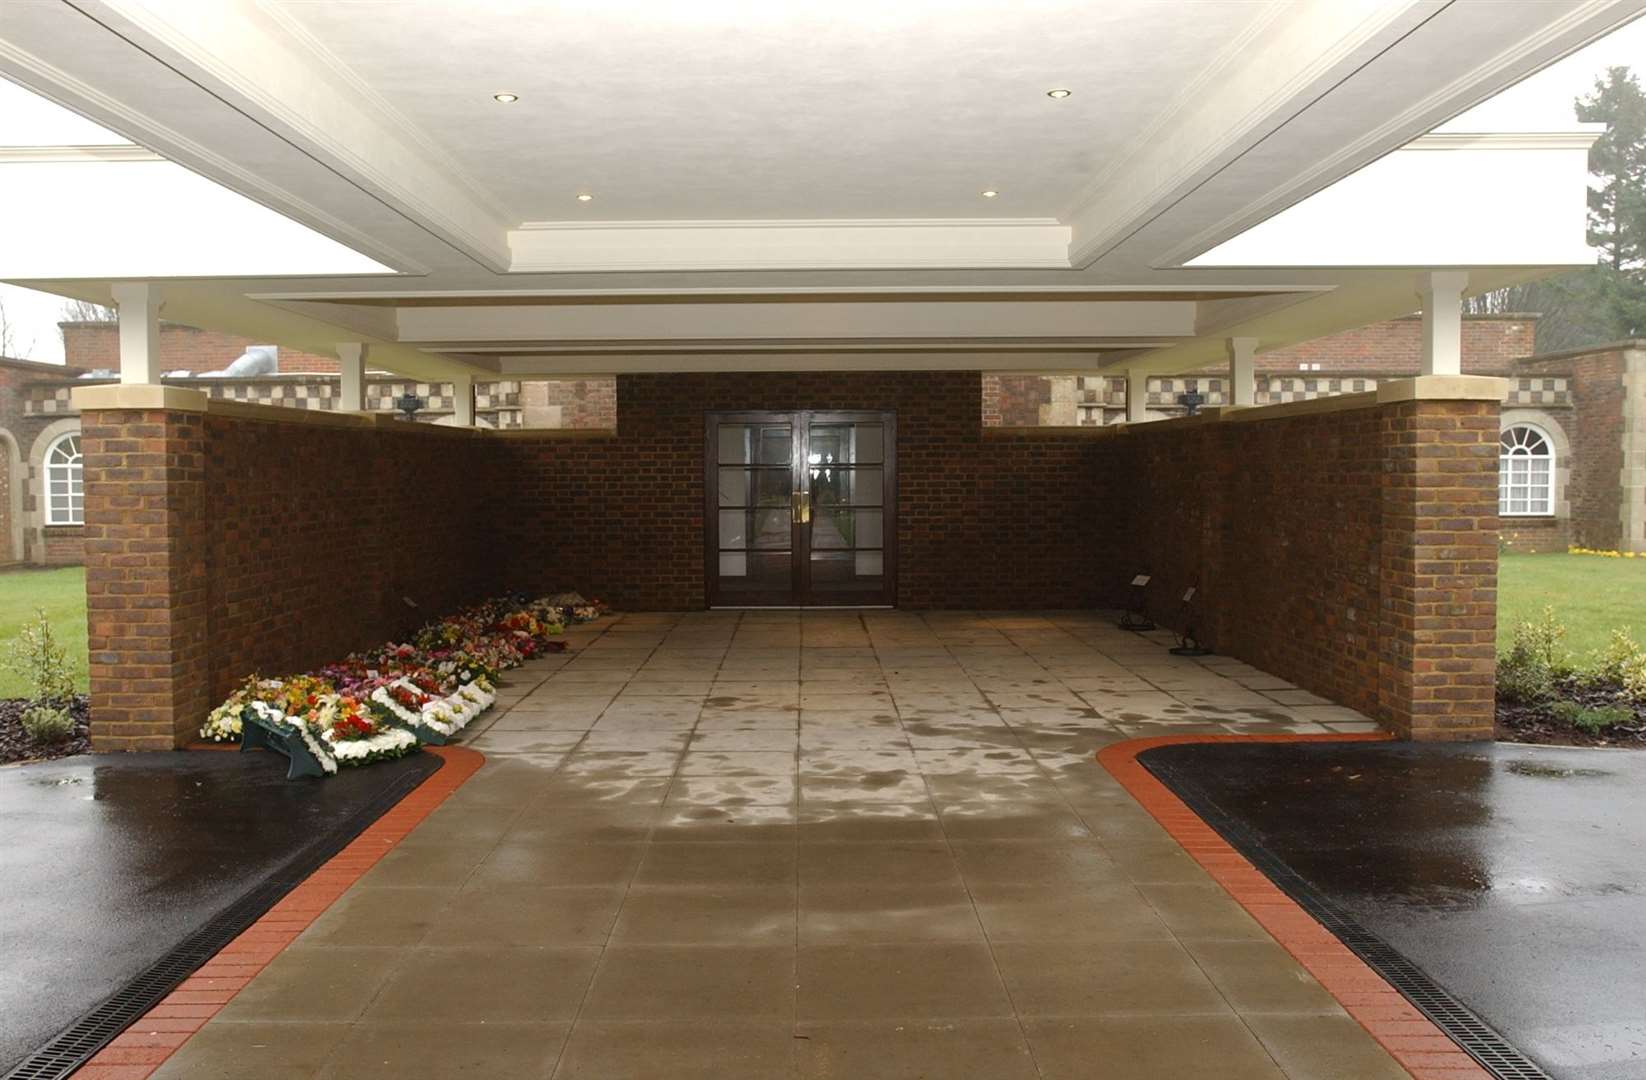 Hawkinge crematorium